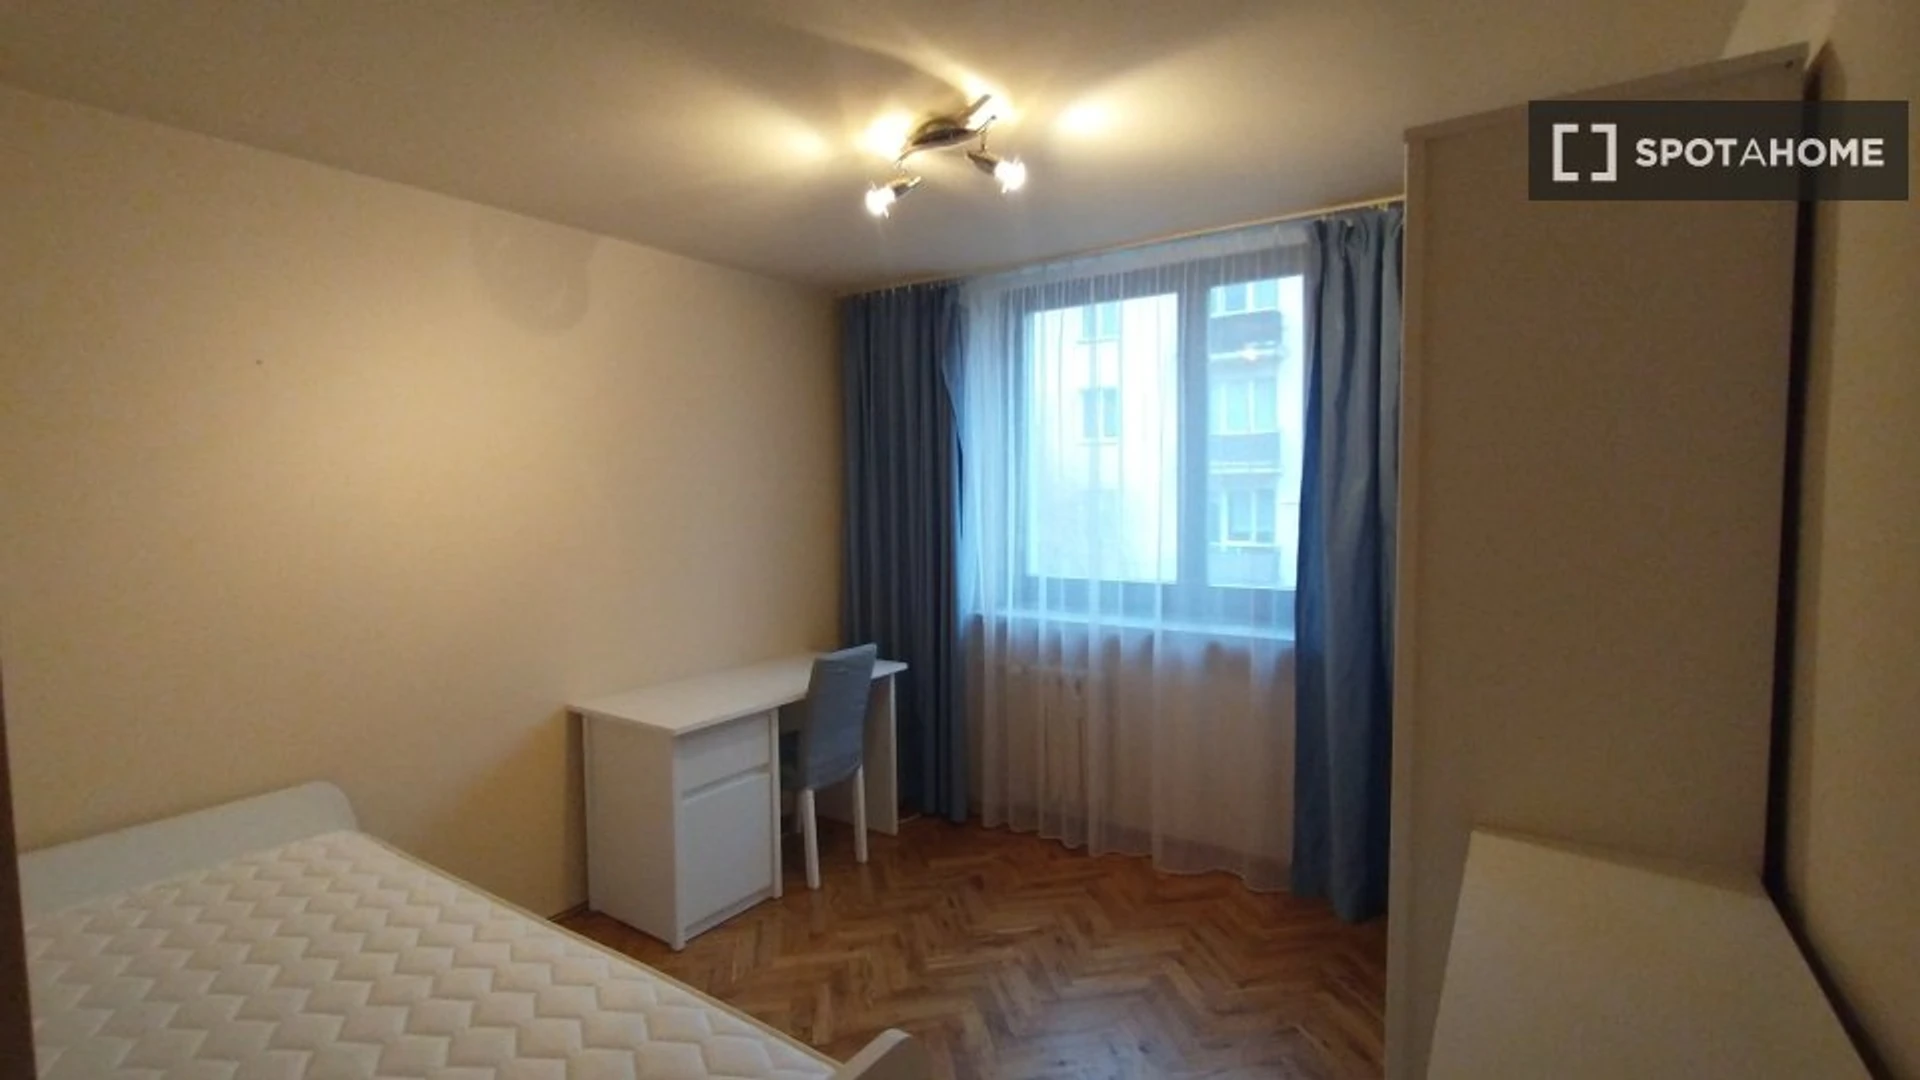 Bright private room in Lublin